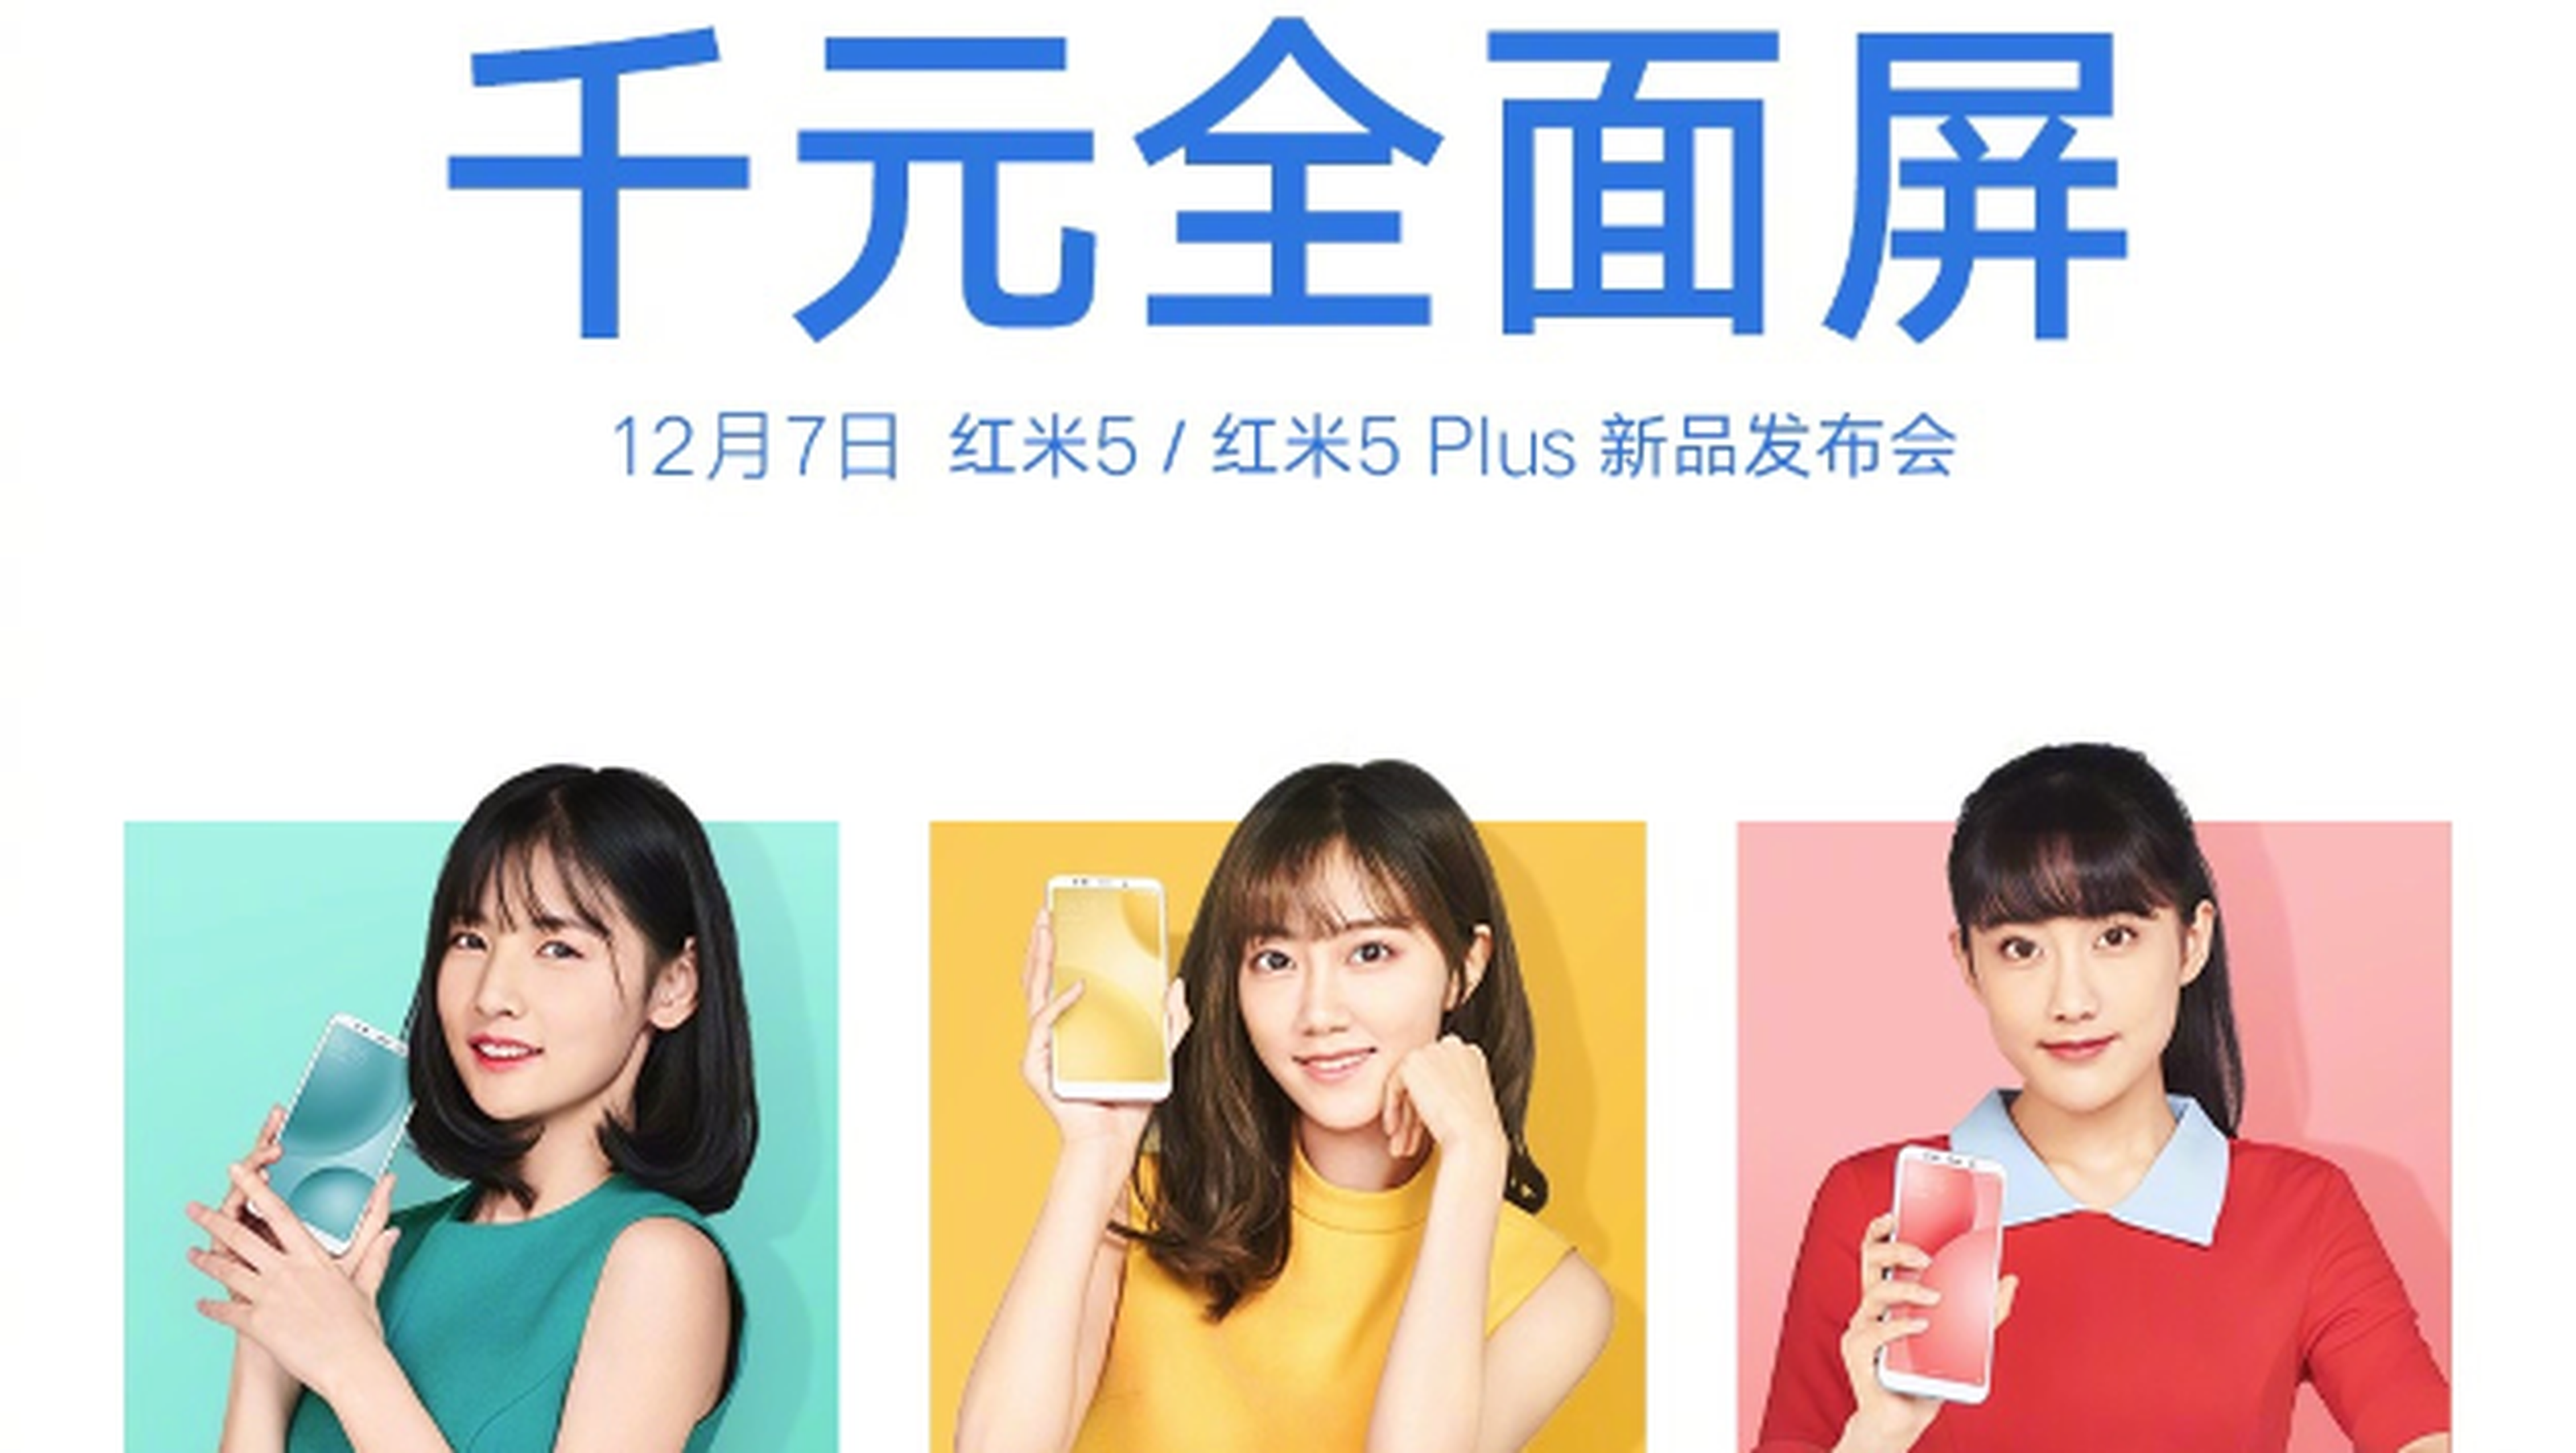 Las especificaciones del Xiaomi Redmi 5, filtradas antes de su lanzamiento.